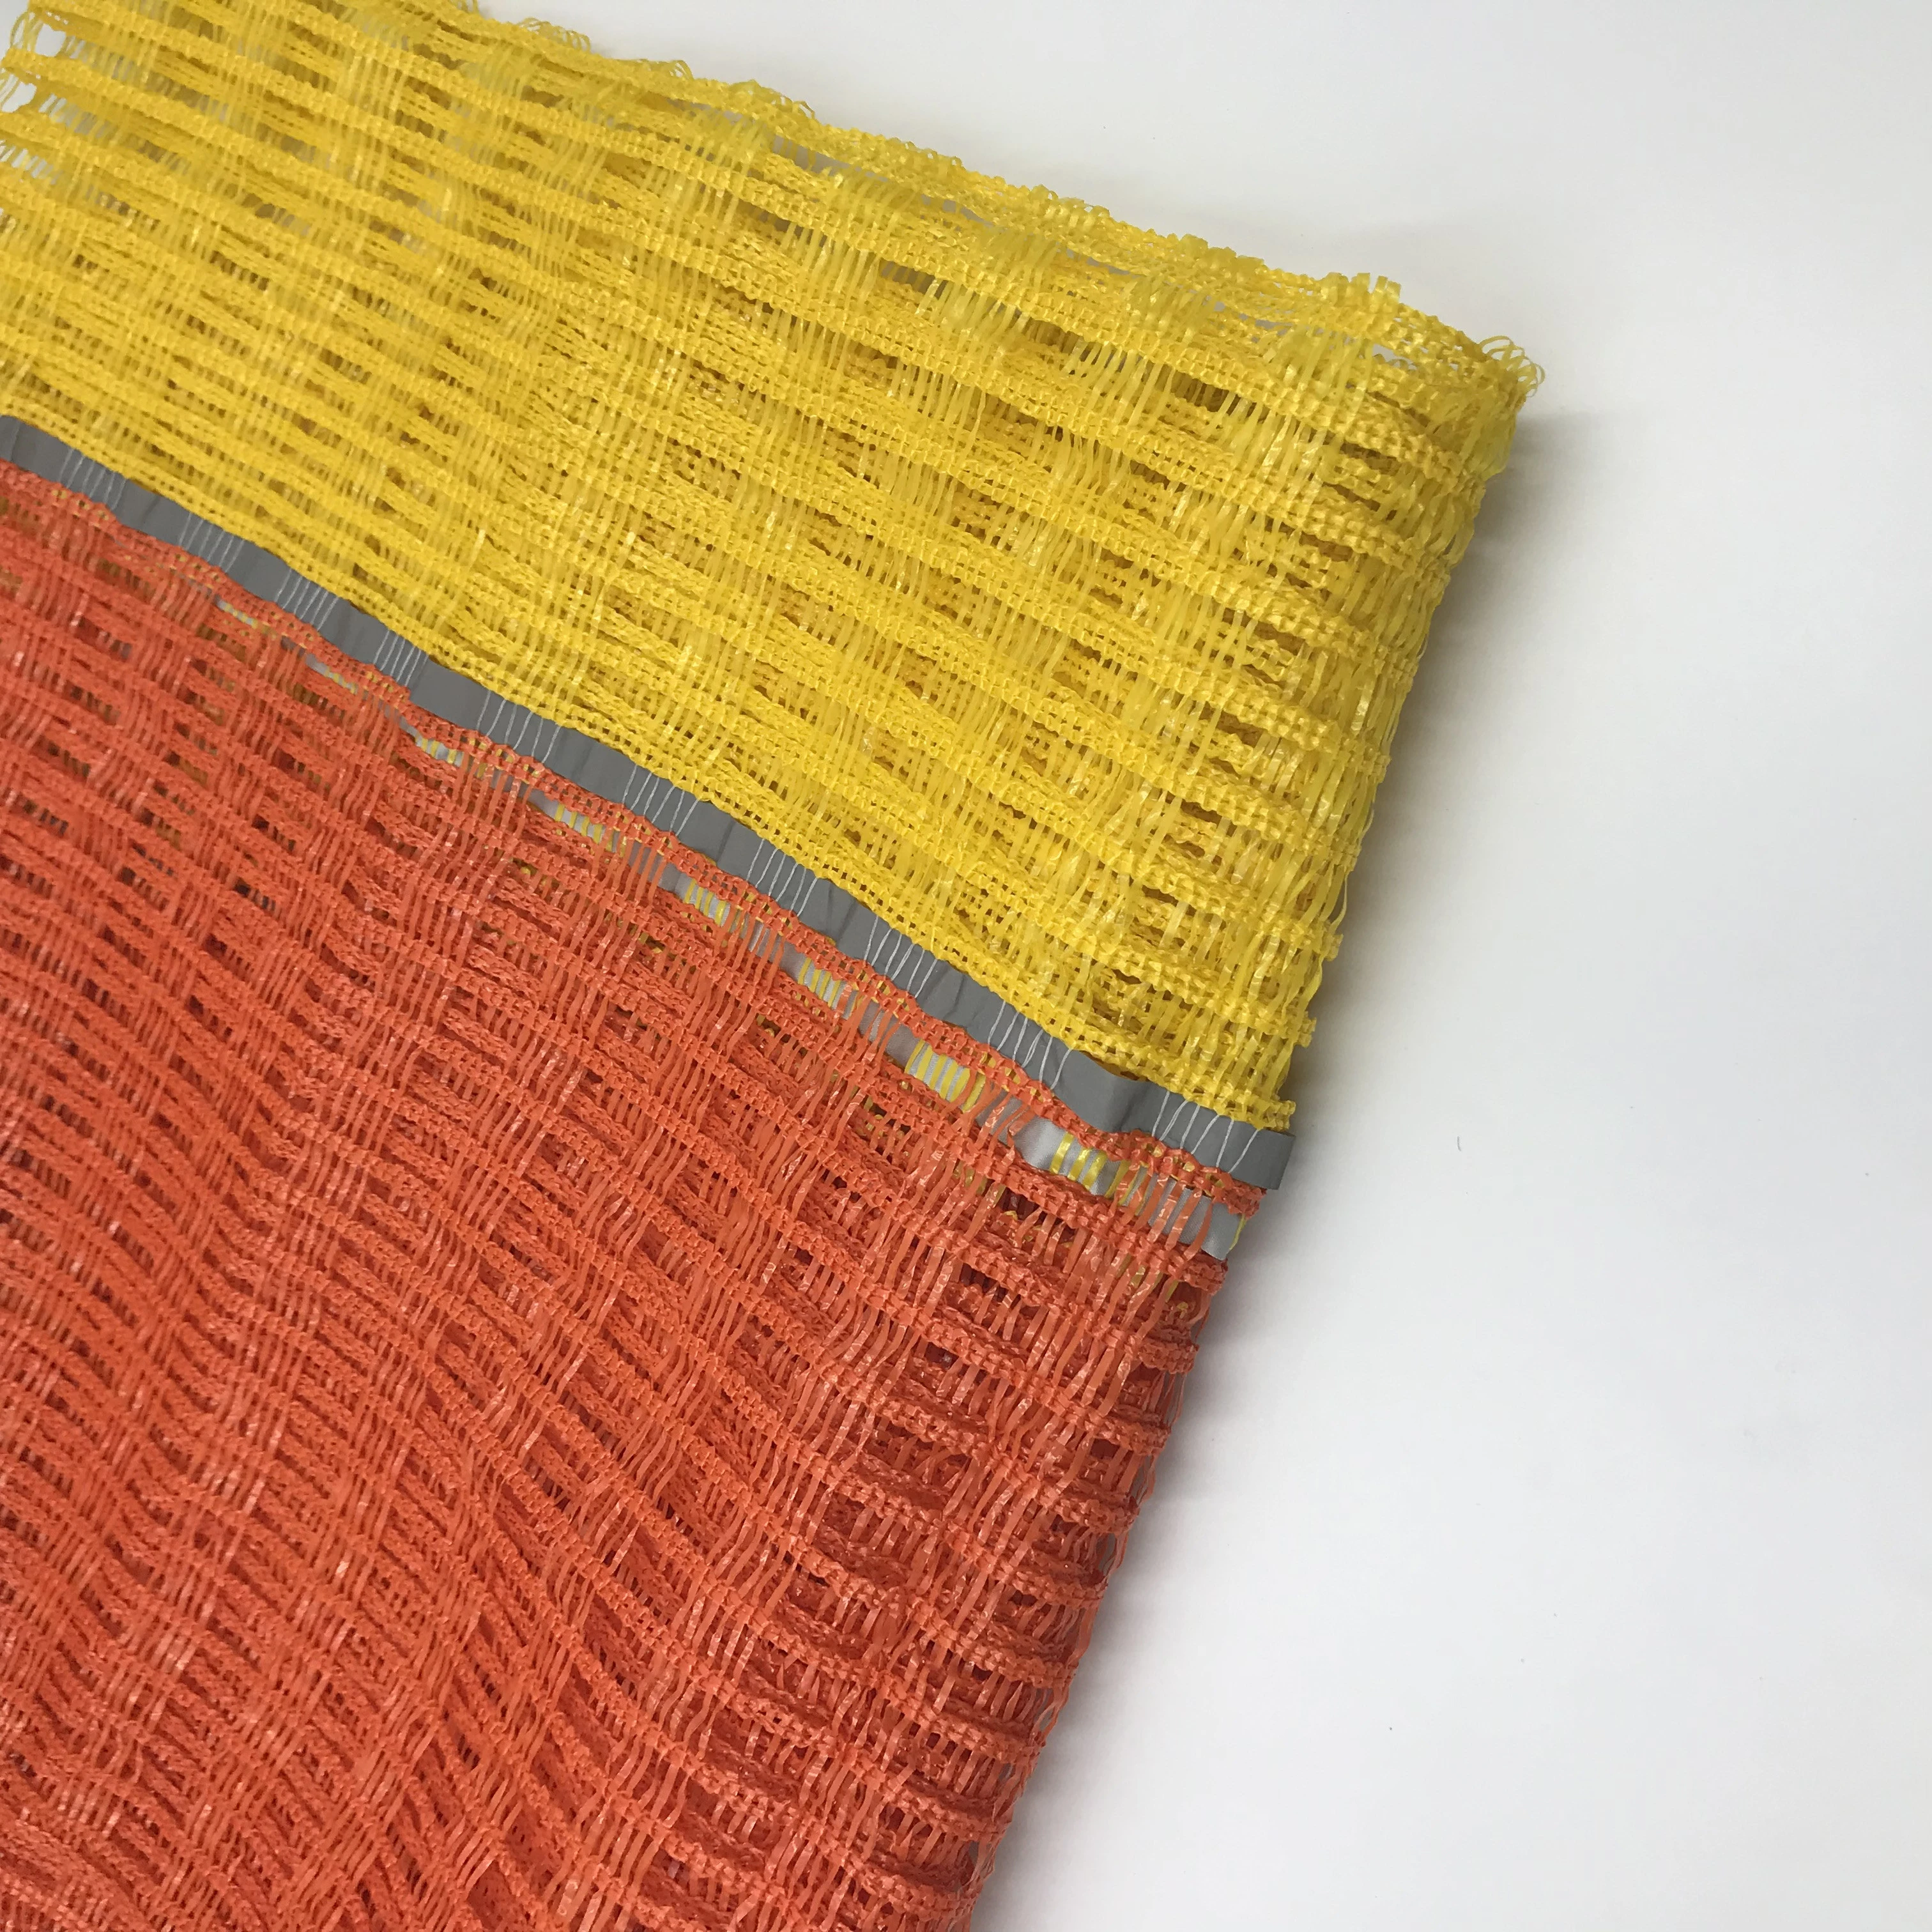 Orange and yellow netting &amp; Barrier netting